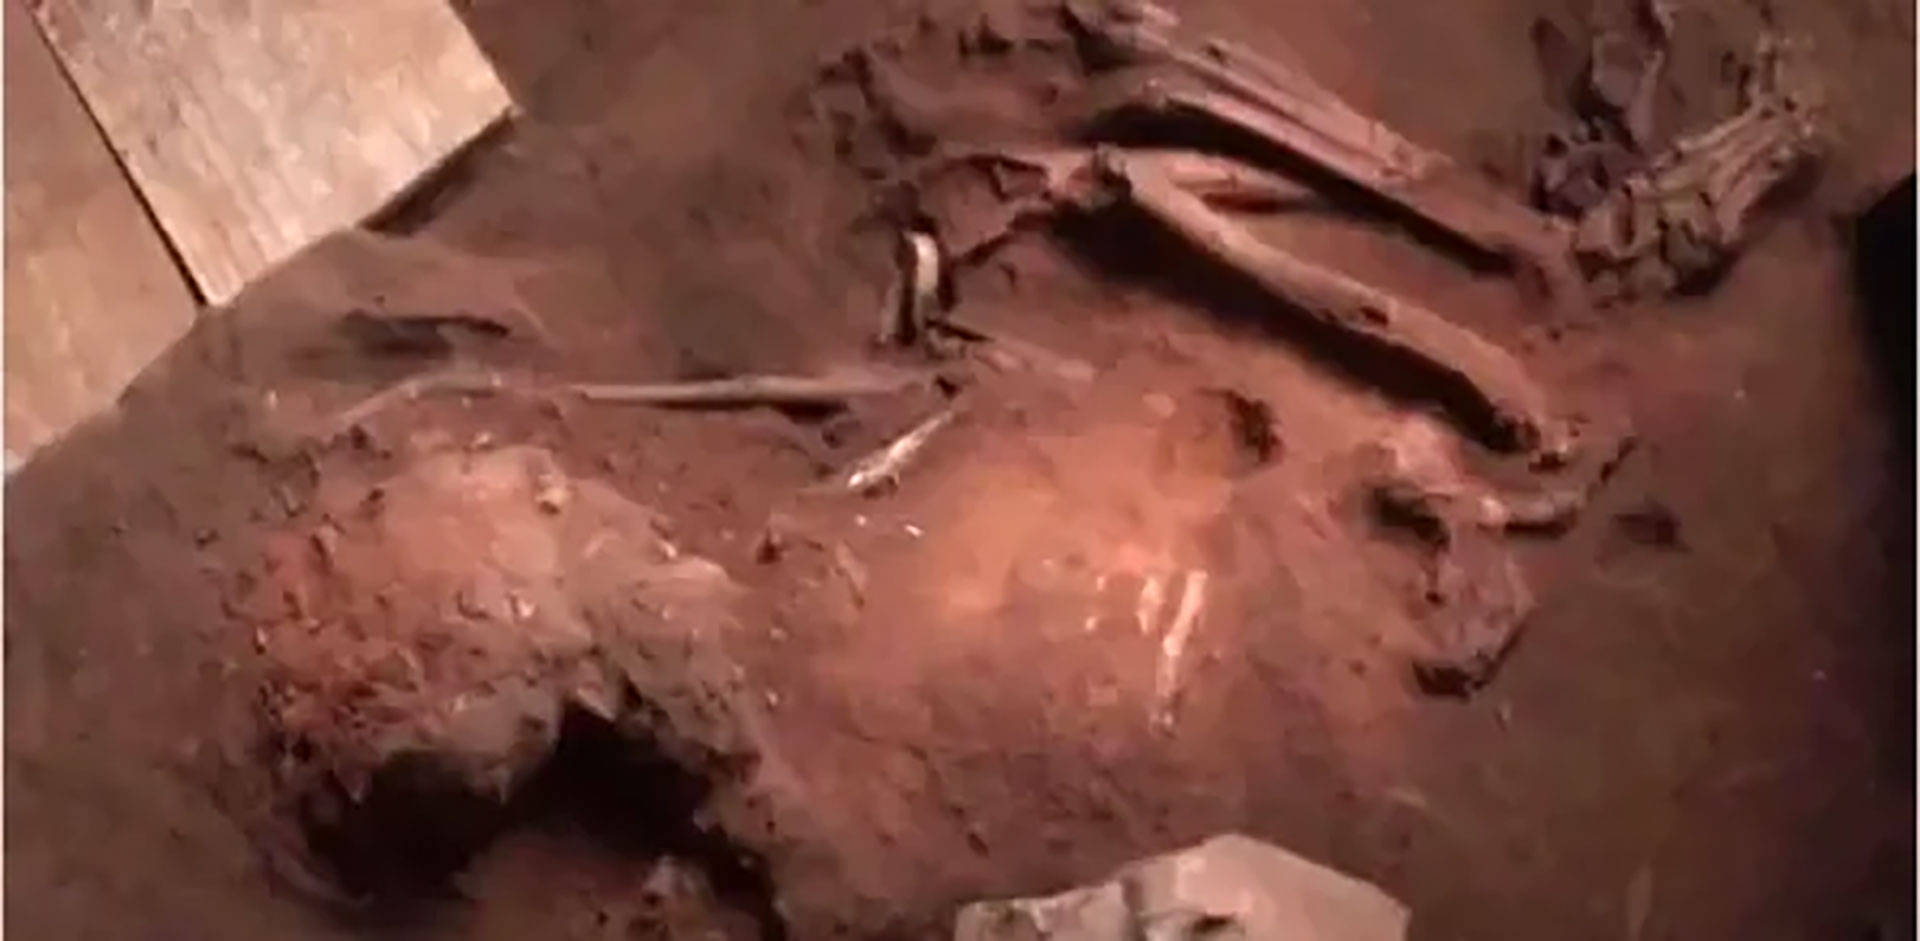 Lo hallado por los arqueólogos brasileños se trata de un esqueleto casi completo, descubierto a 2 metros de profundidad